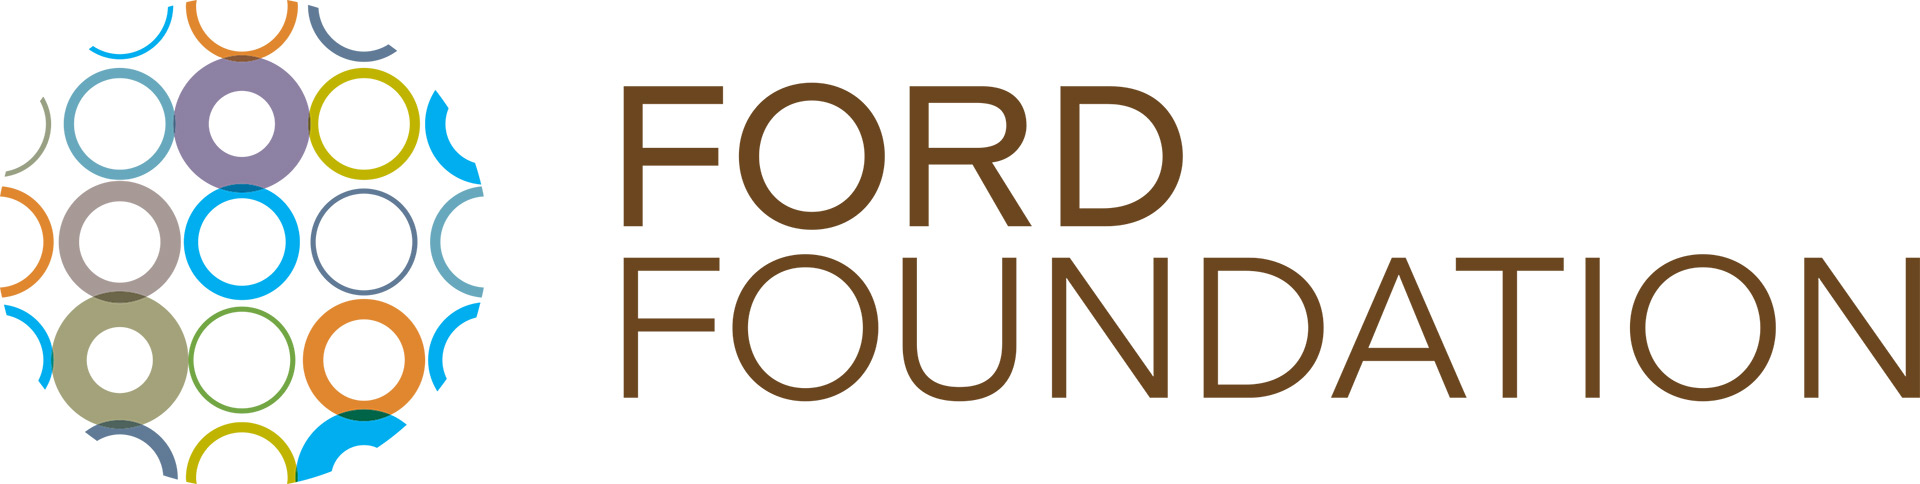 ford-foundation_logo